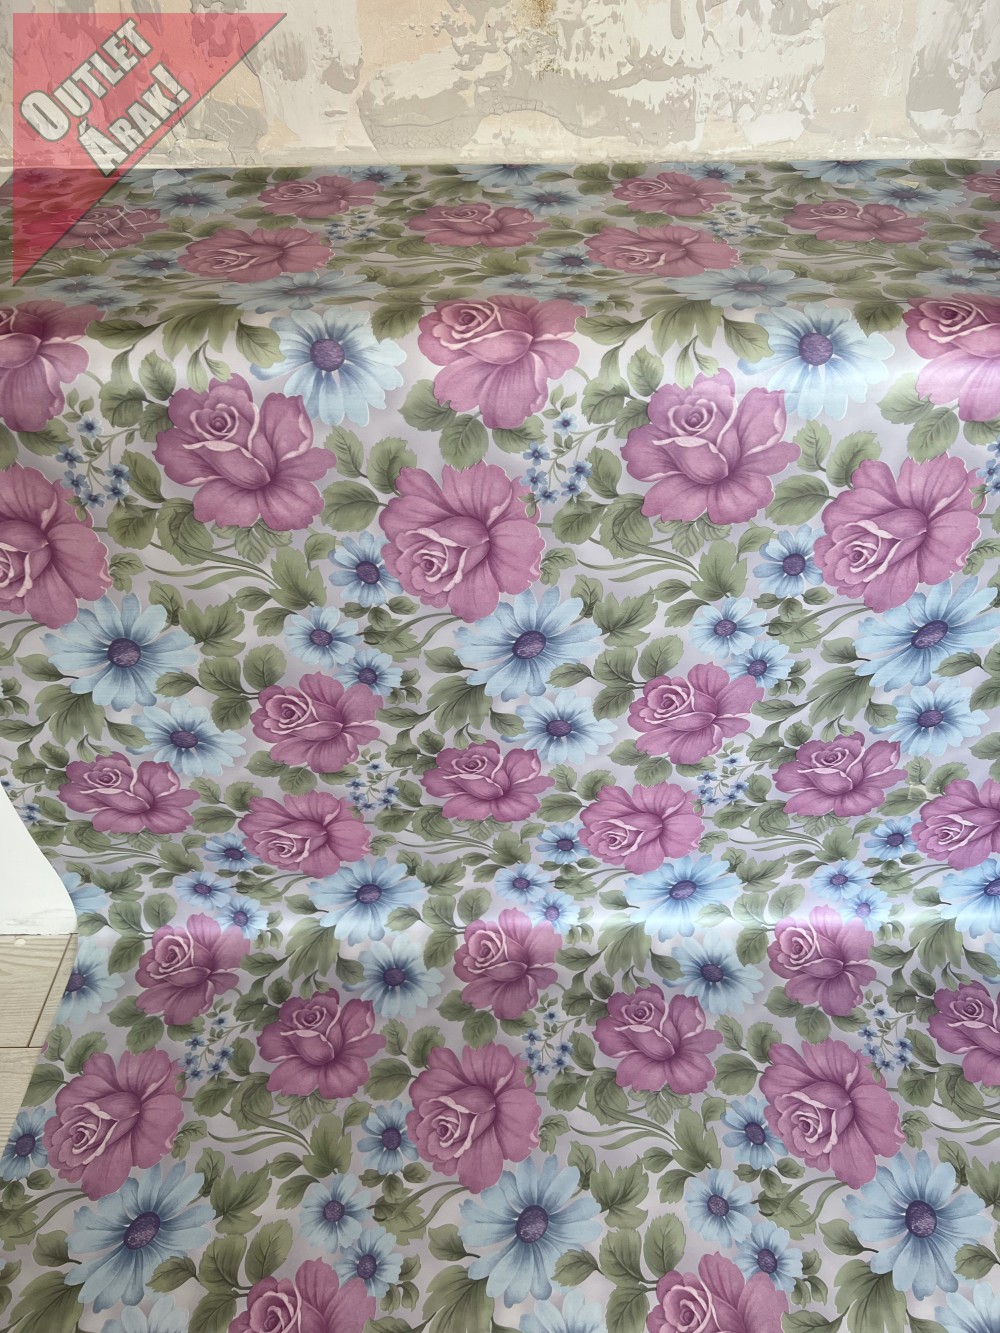   Dorsia új kész Viaszos asztalterítő kék lila rózsa 100x140cm